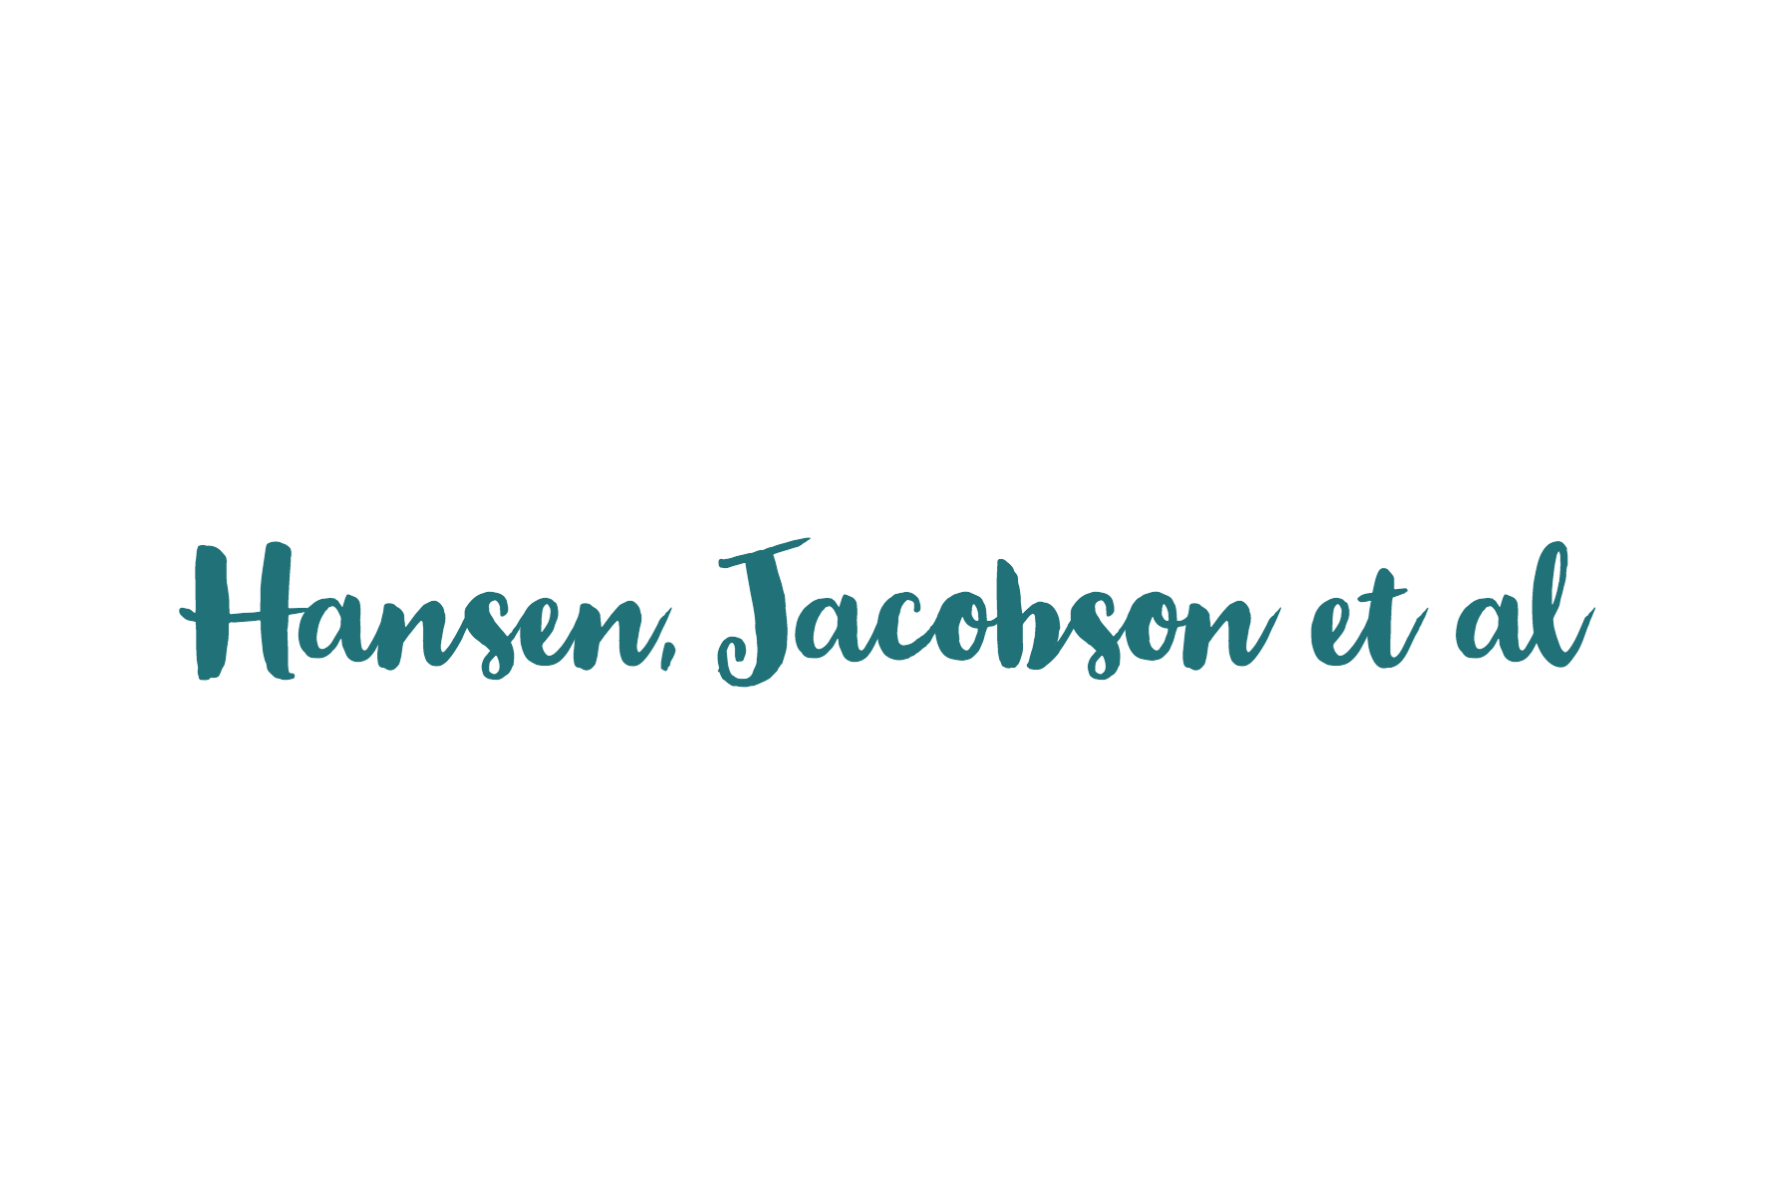 OIC_Hansen Jacobsen_logo